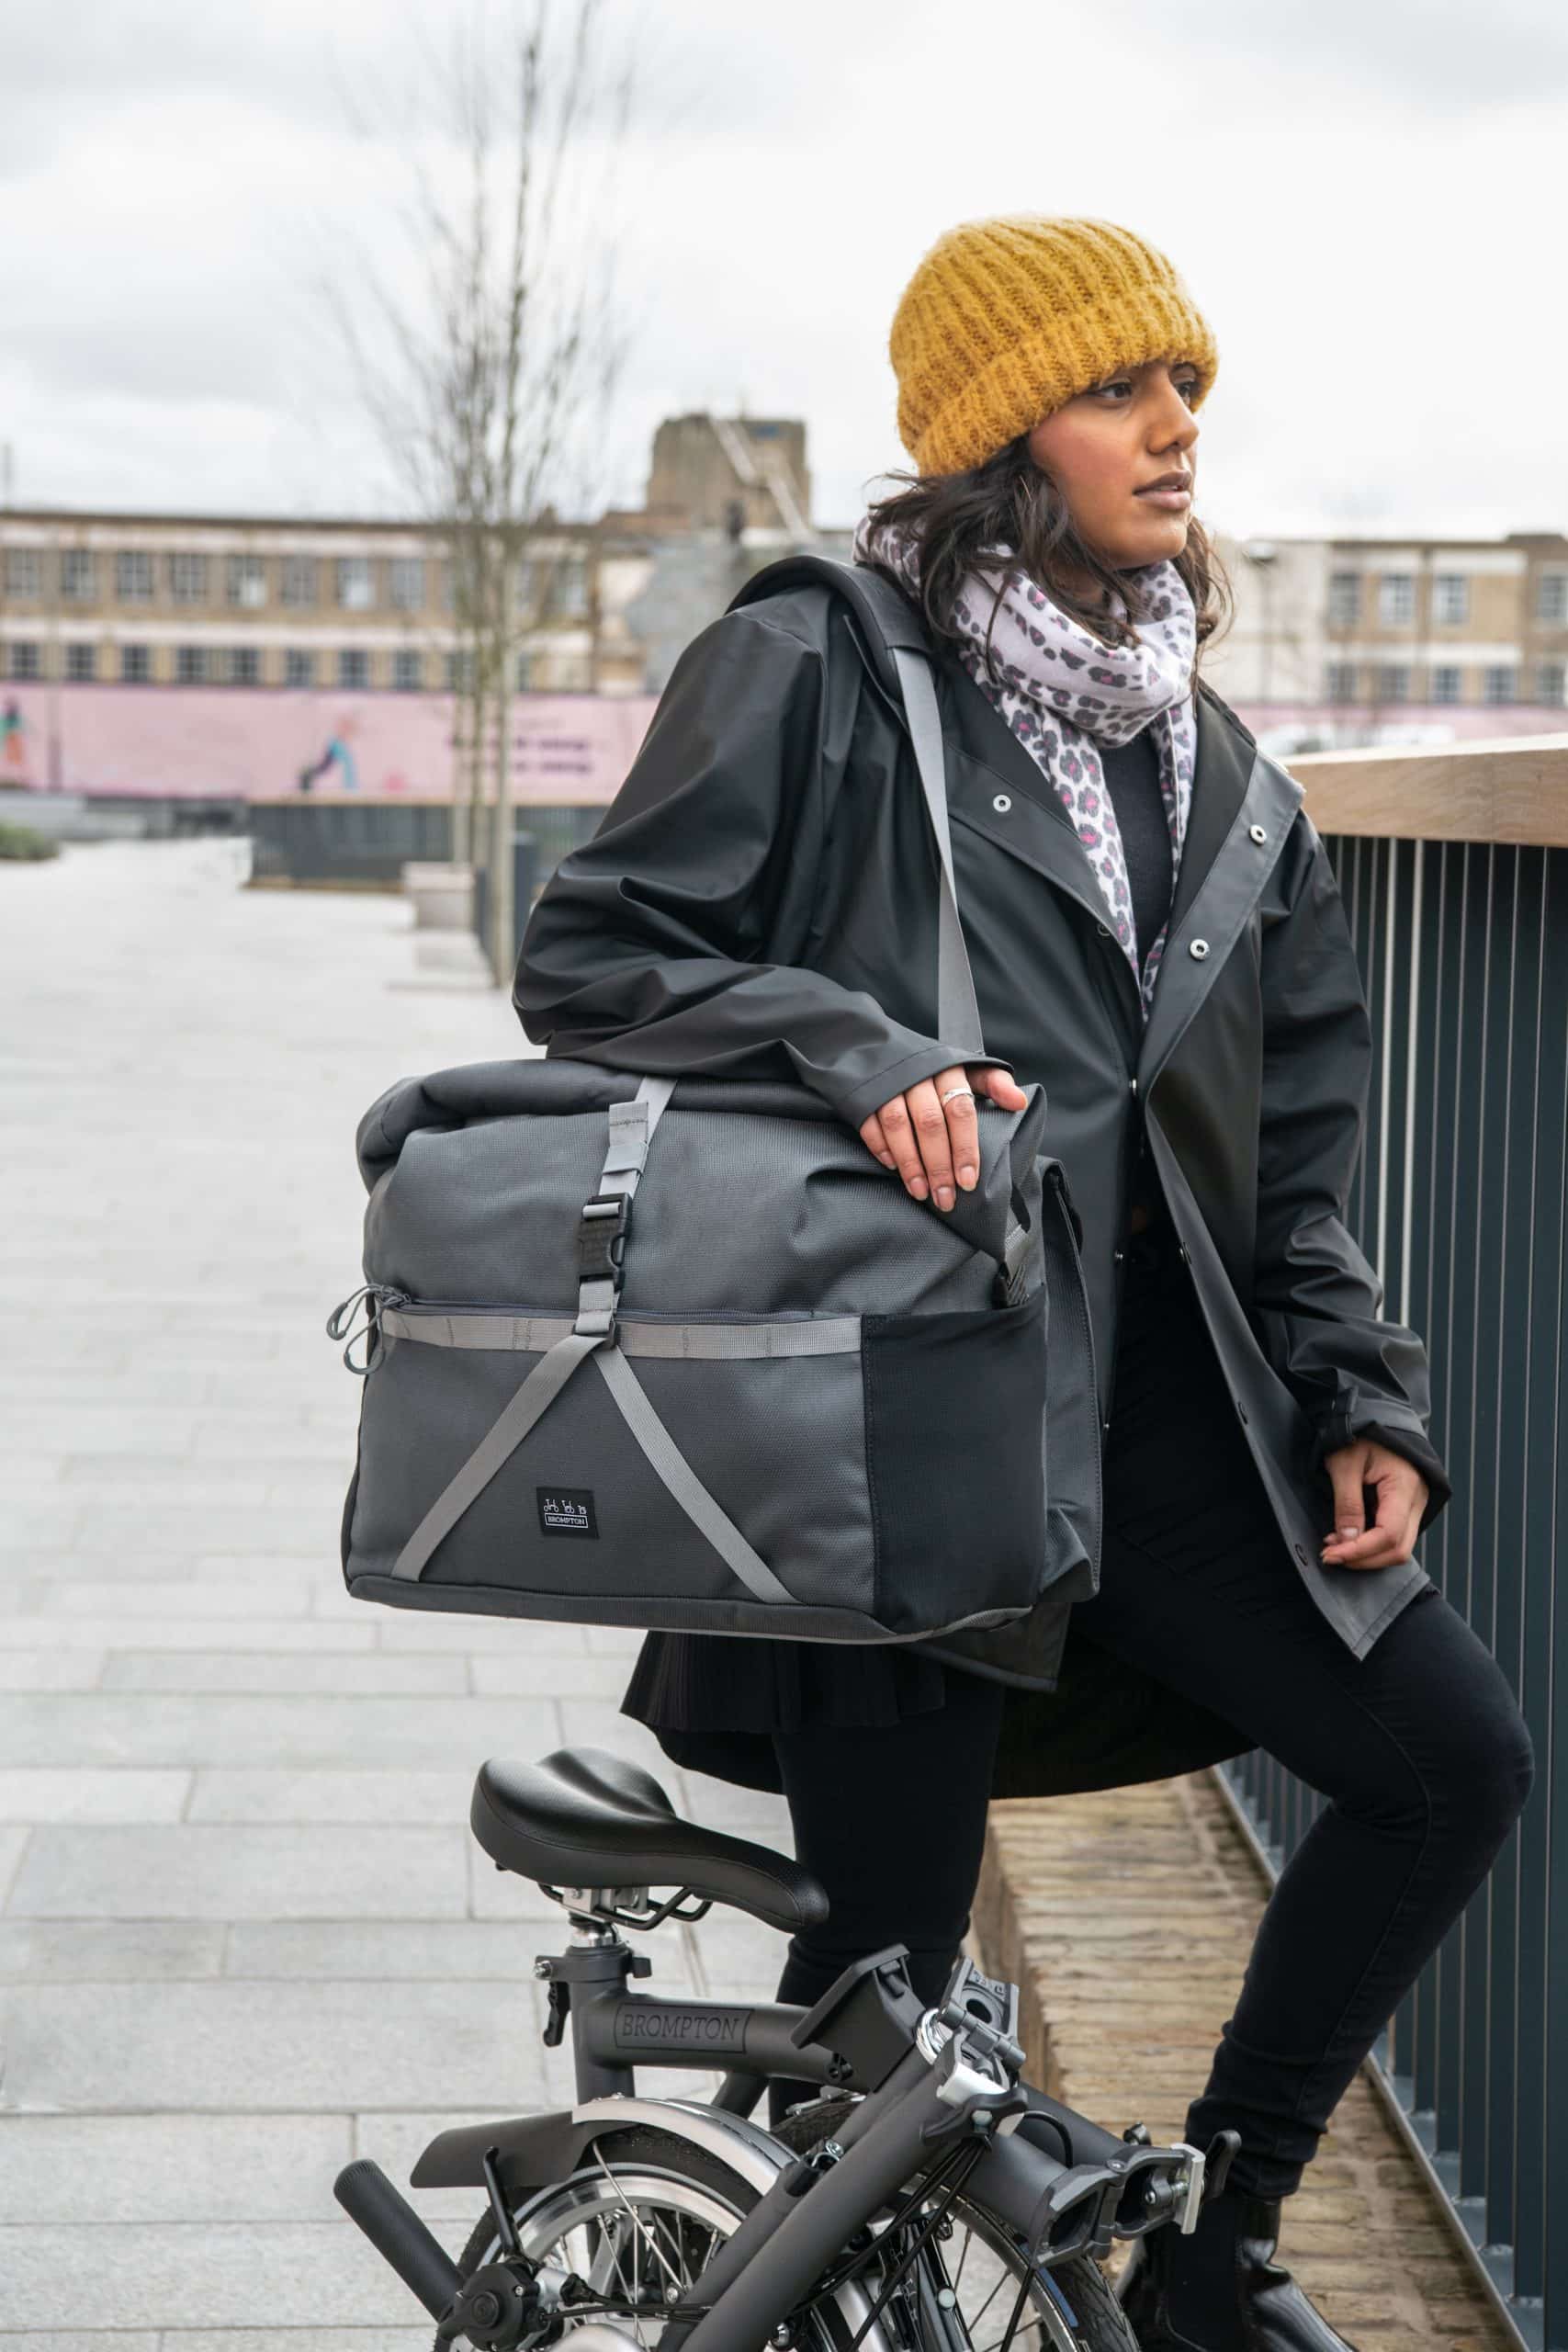 Brompton Borough Roll Top Bag Large in Dark Grey-